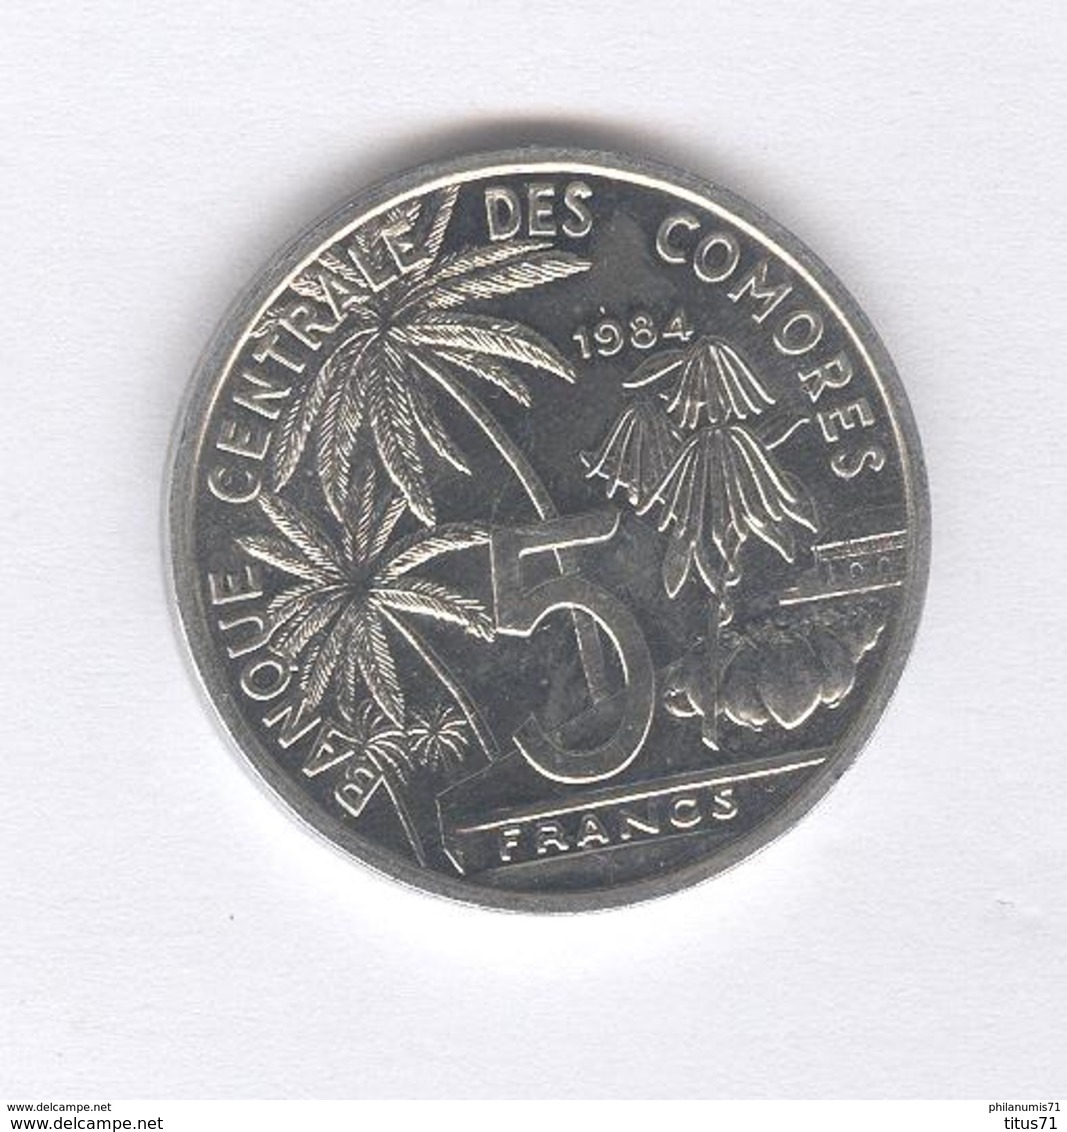 5 Francs Comores 1984 - SUP - Comoros